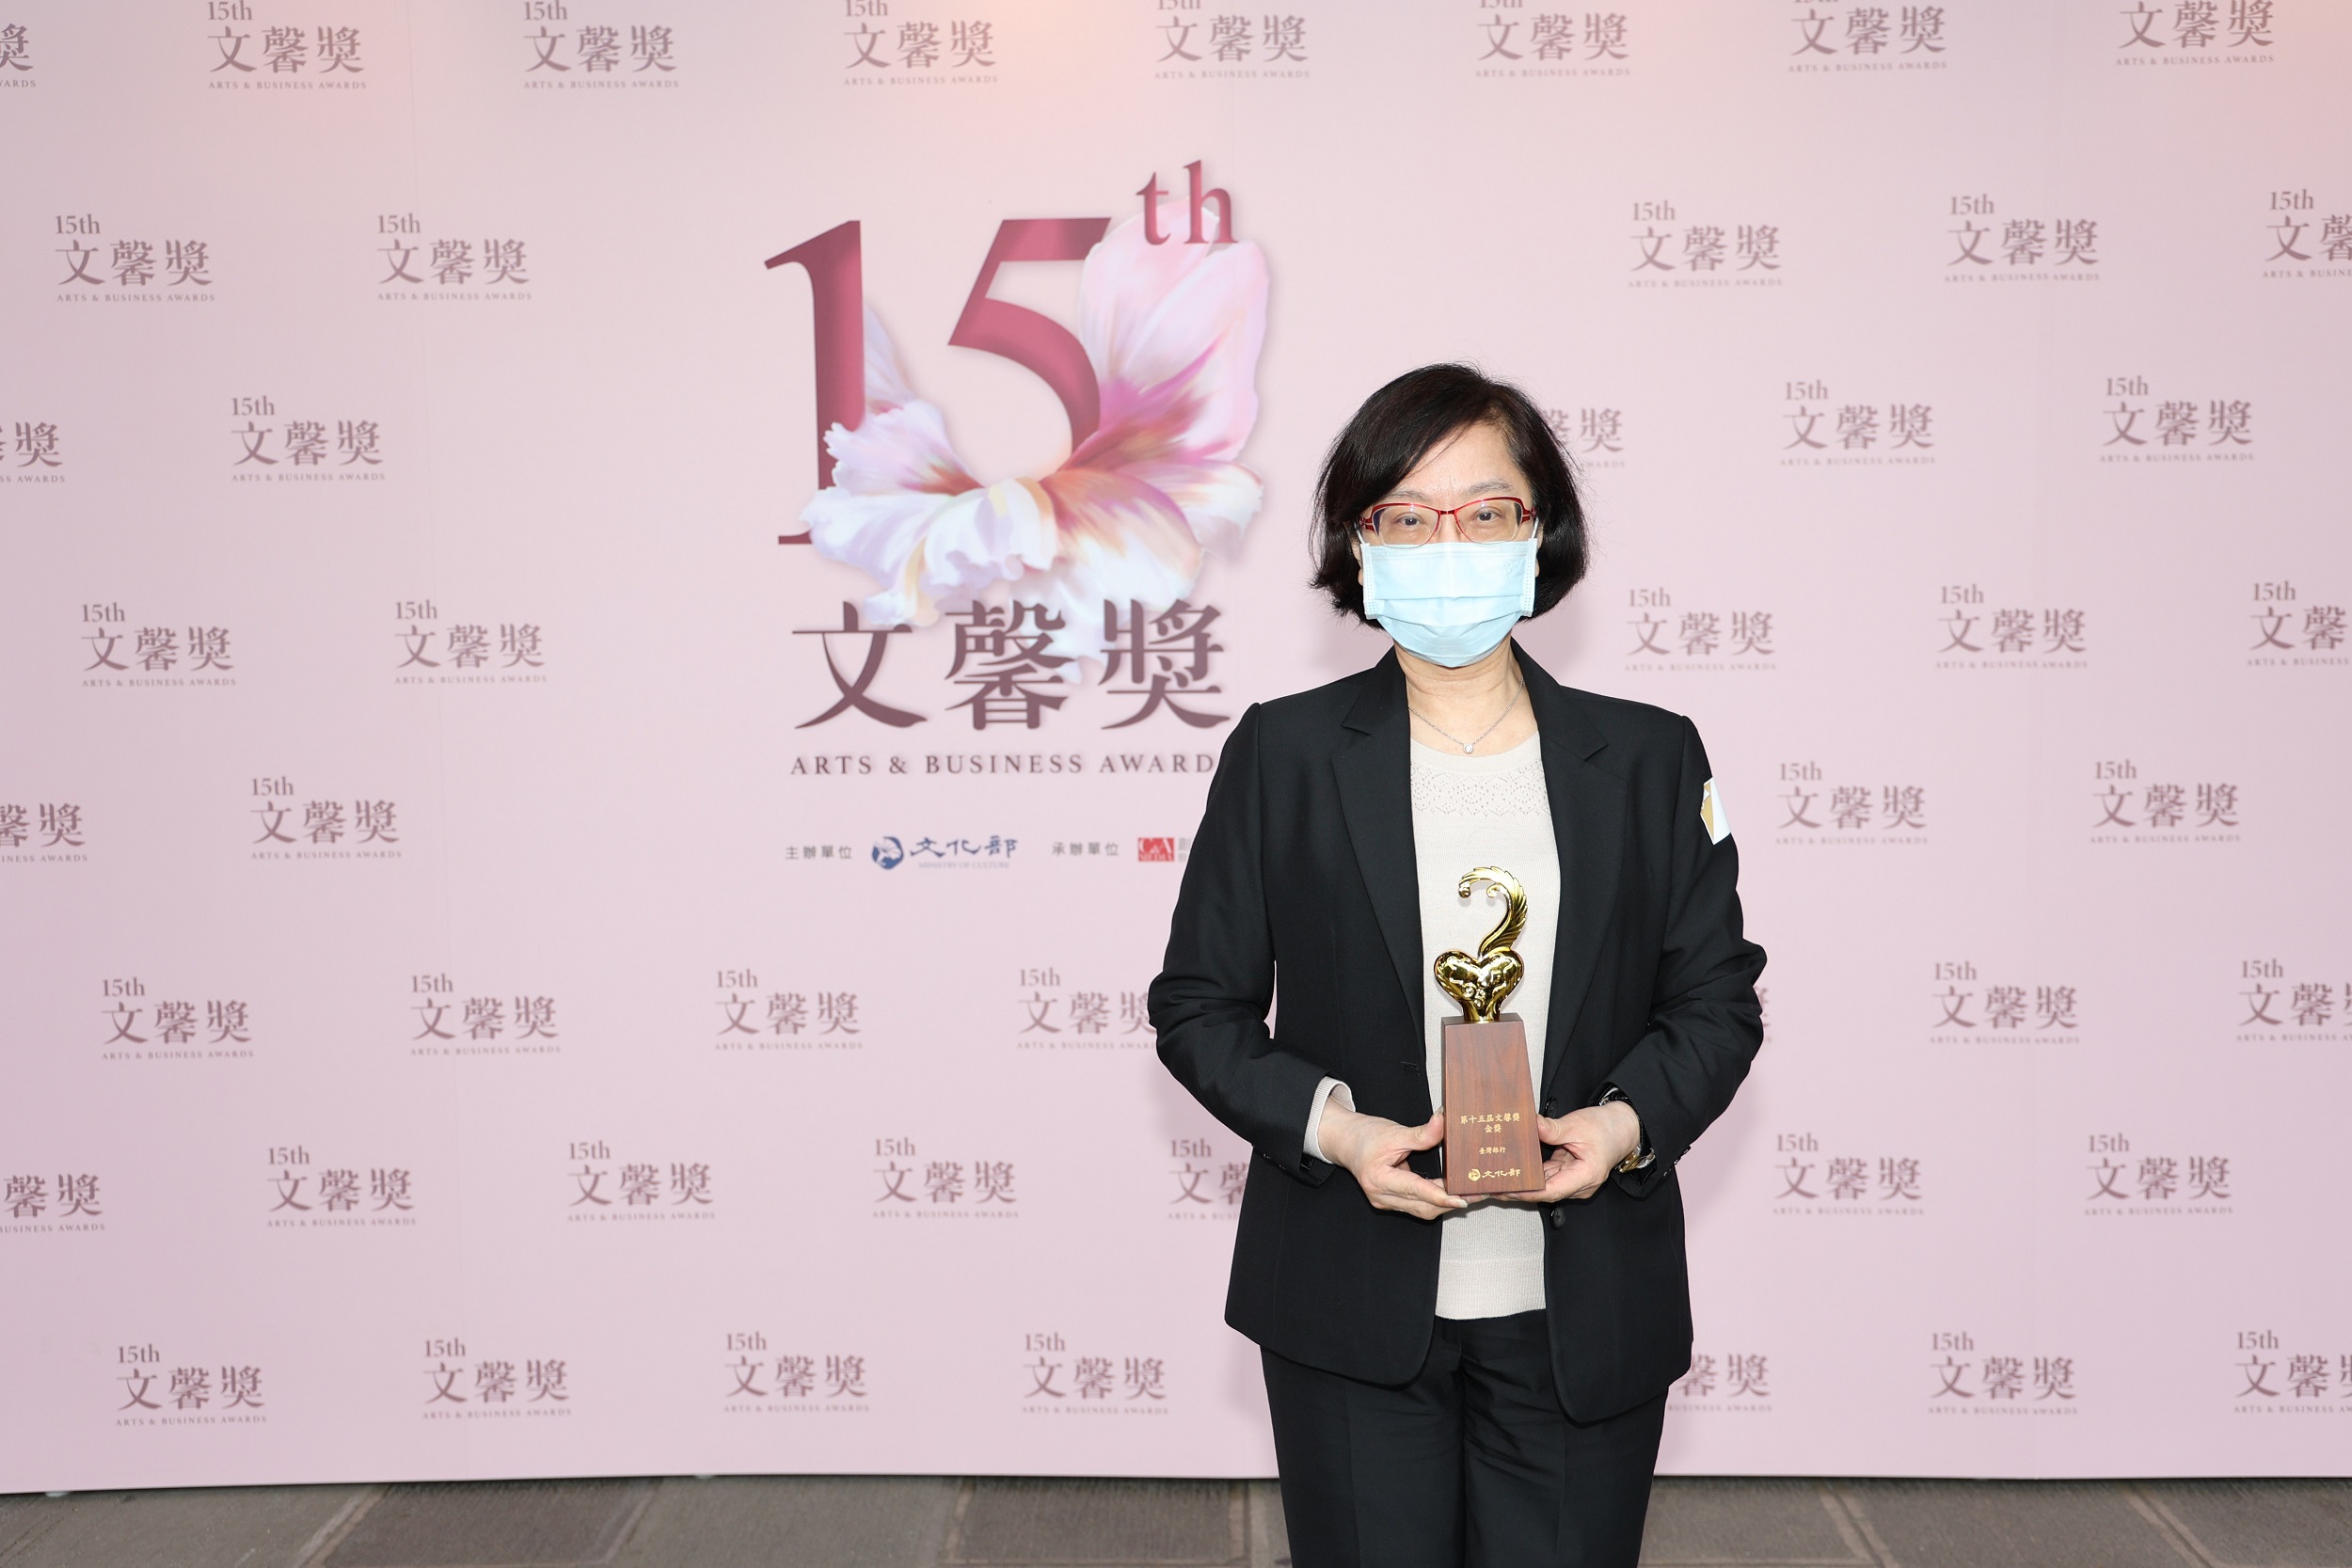 臺灣銀行榮獲文化部第15屆文馨獎常設獎-金獎，由該行吳副總經理慕瑛出席領獎。